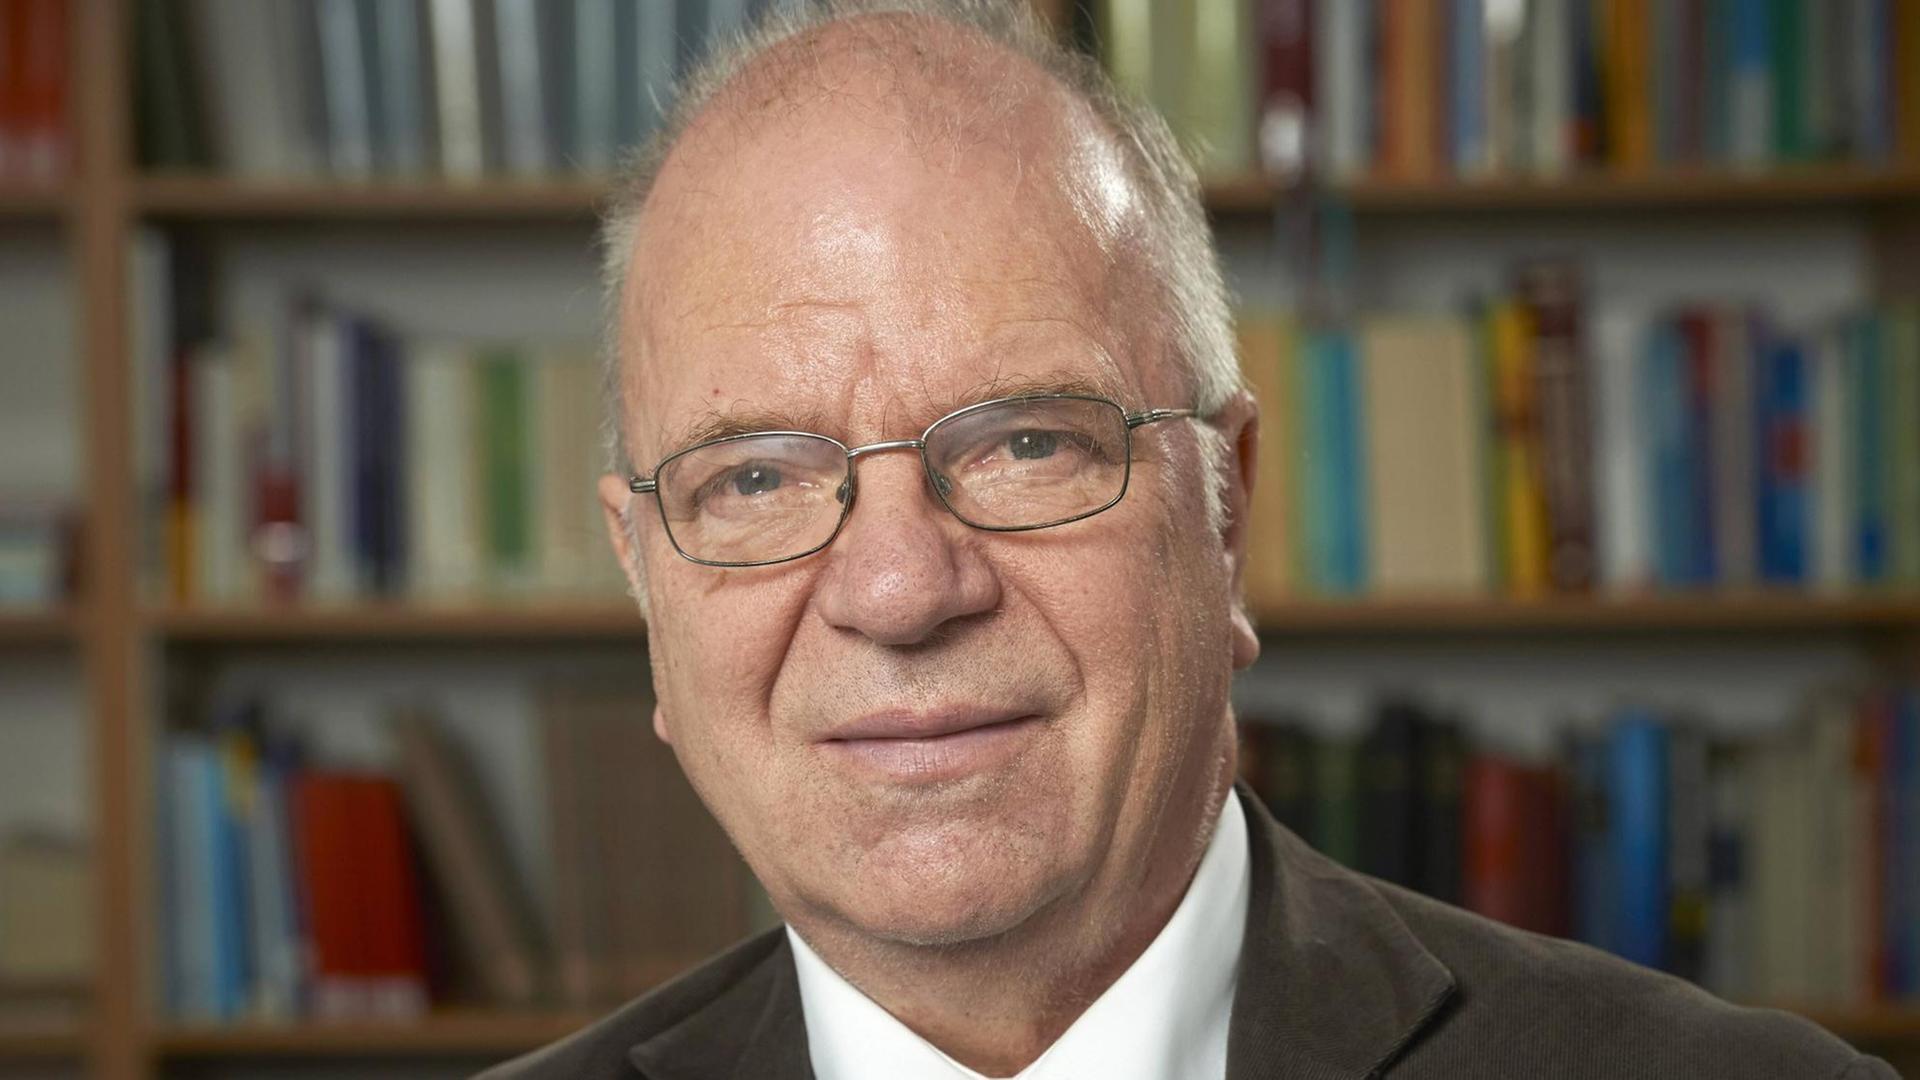 Der evangelische Theologe, Philosoph und SPD-Politiker Richard Schröder (Foto vom 13.12.13).